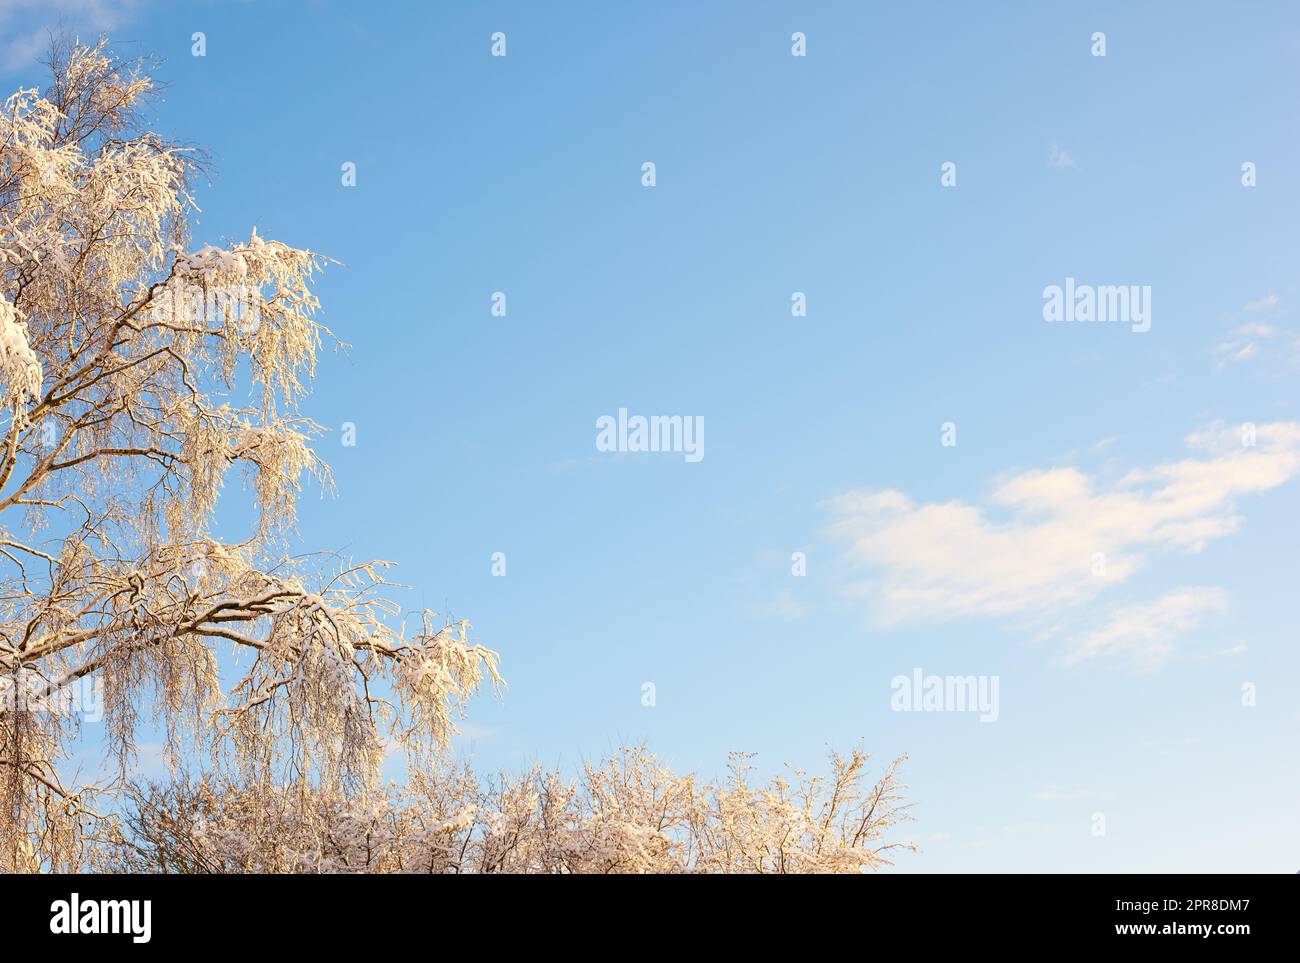 Branches d'arbre couvertes de neige en hiver contre un fond ciel clair avec copyspace. Feuilles et branches congelées d'un grand arbre. La neige fondait sur les feuilles vertes au début du printemps après la chute de neige à l'extérieur Banque D'Images